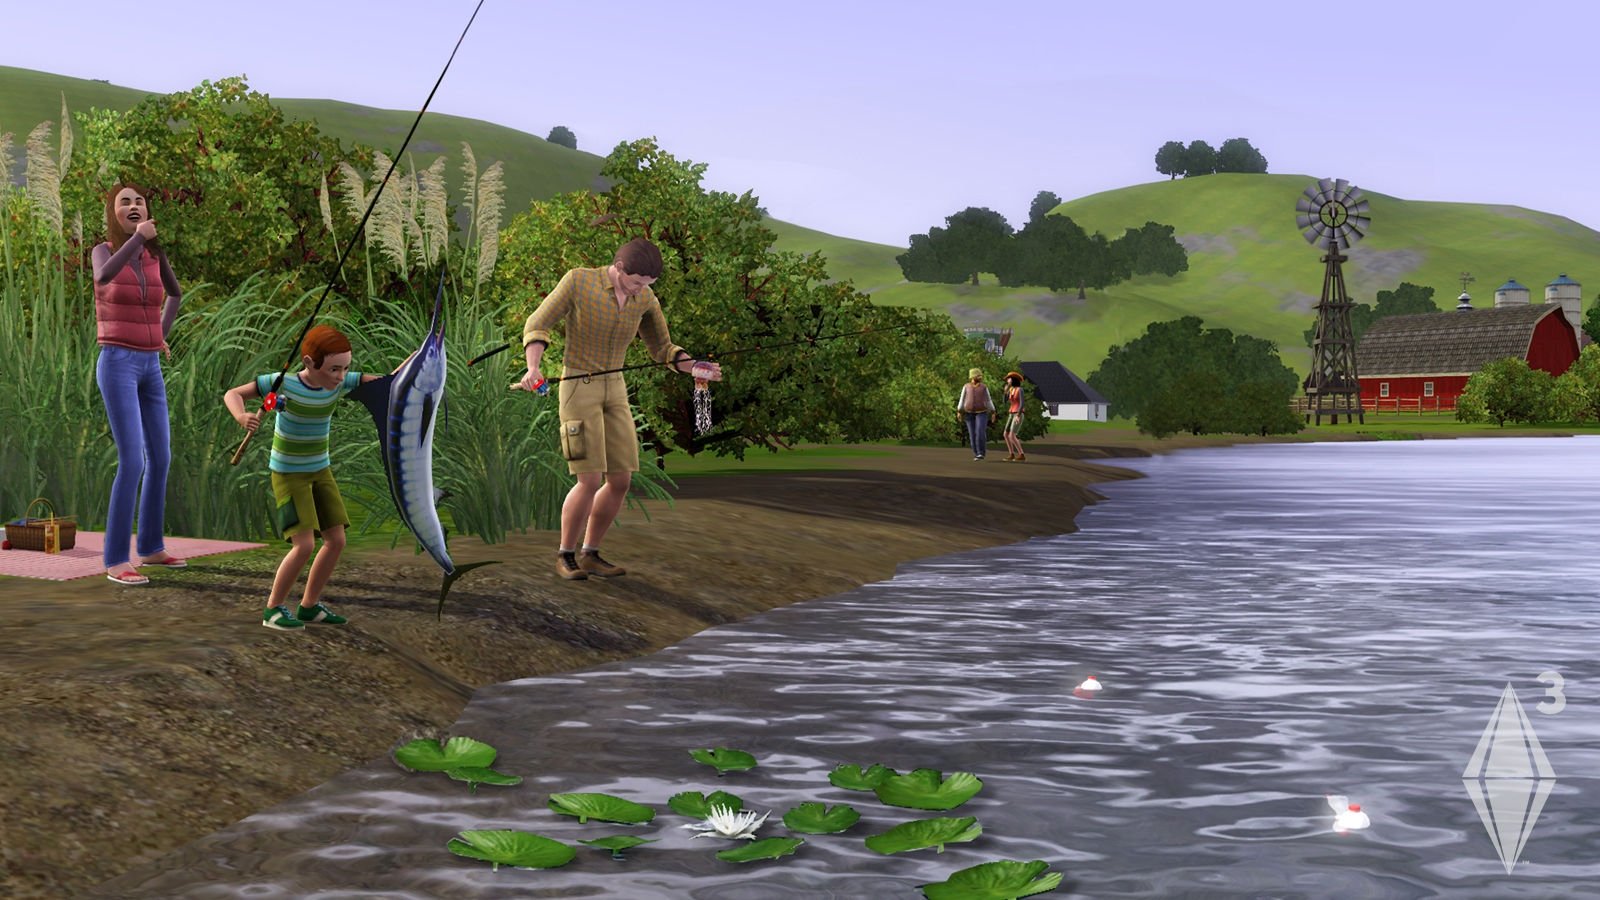 The Sims 3 Mod Apk